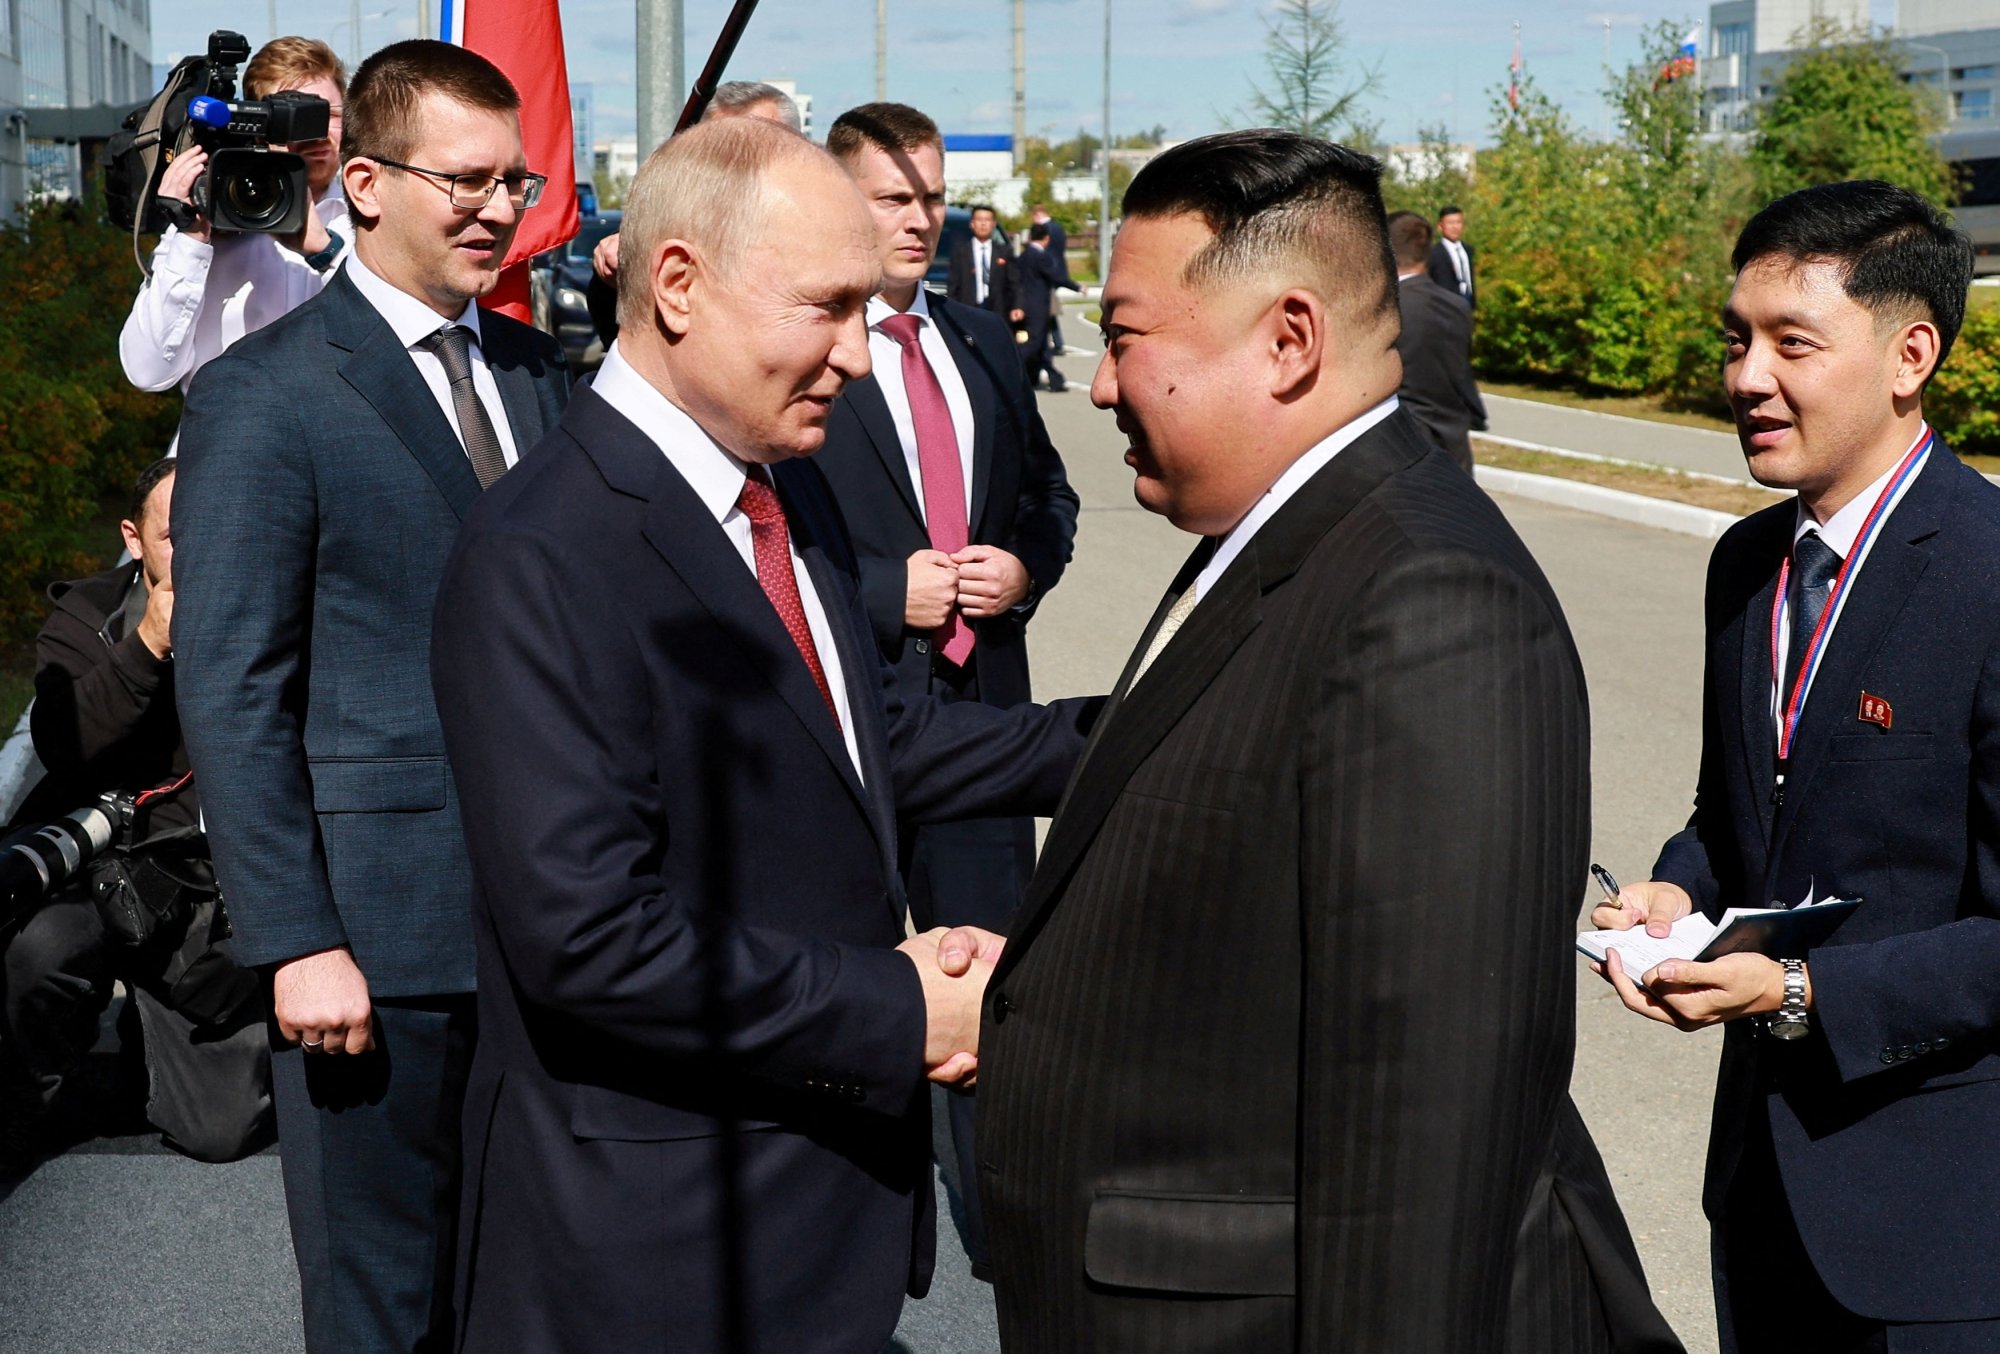 Ρωσία: Όταν ο Πούτιν συνάντησε τον Κιμ Γιονγκ Ουν [βίντεο]